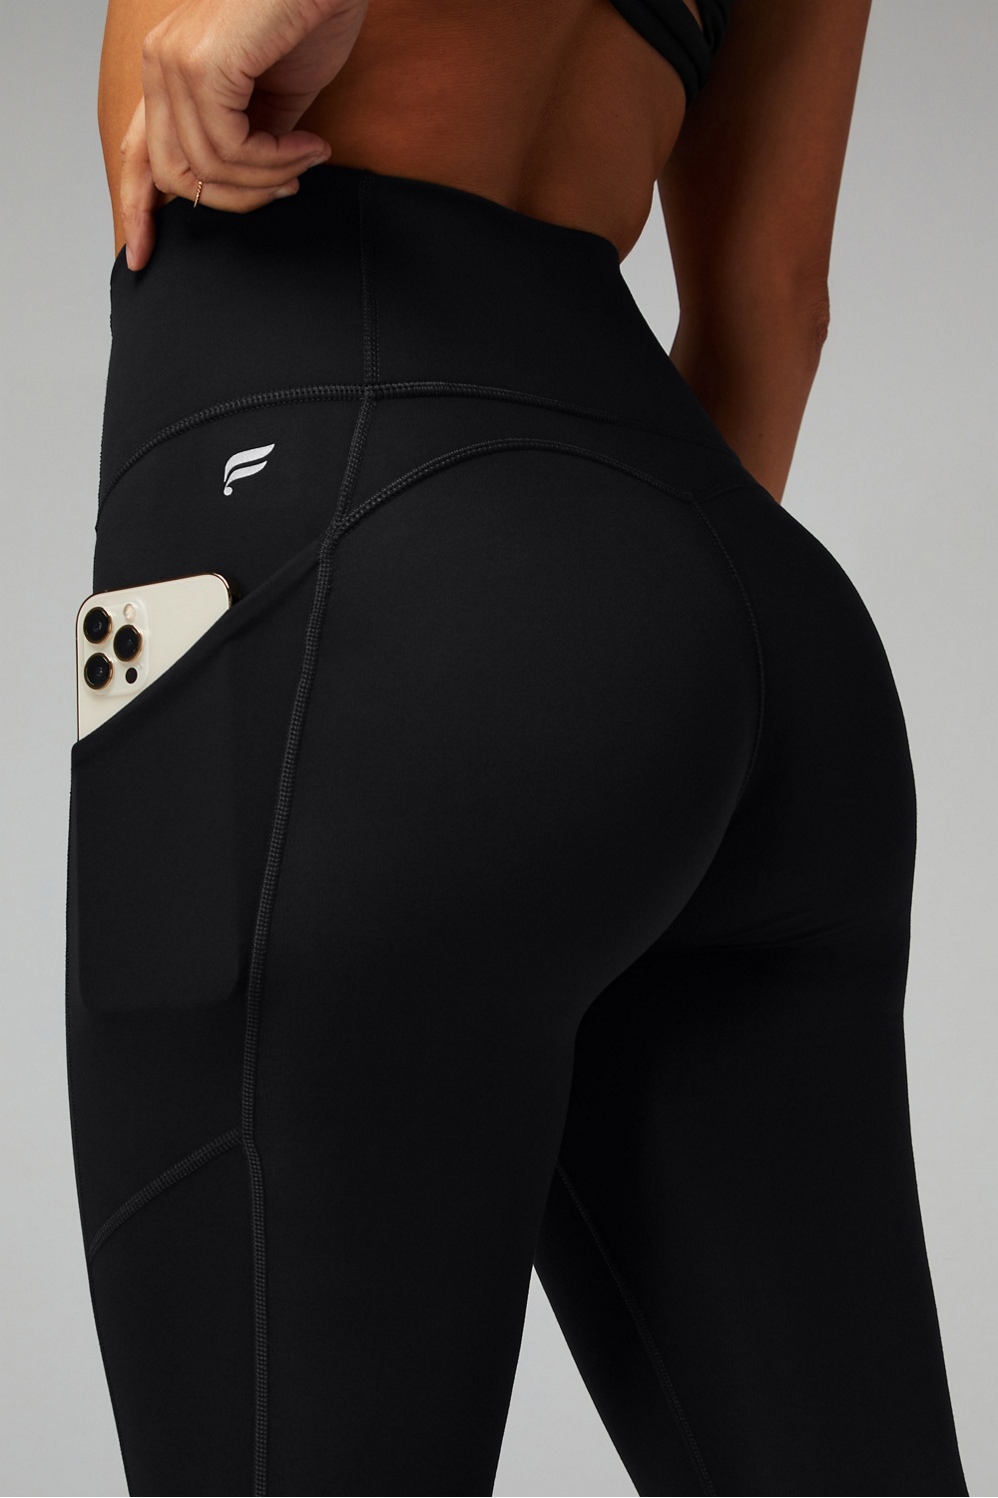 Pact Purefit Pocket Leggings (Black) Women's Clothing - ShopStyle